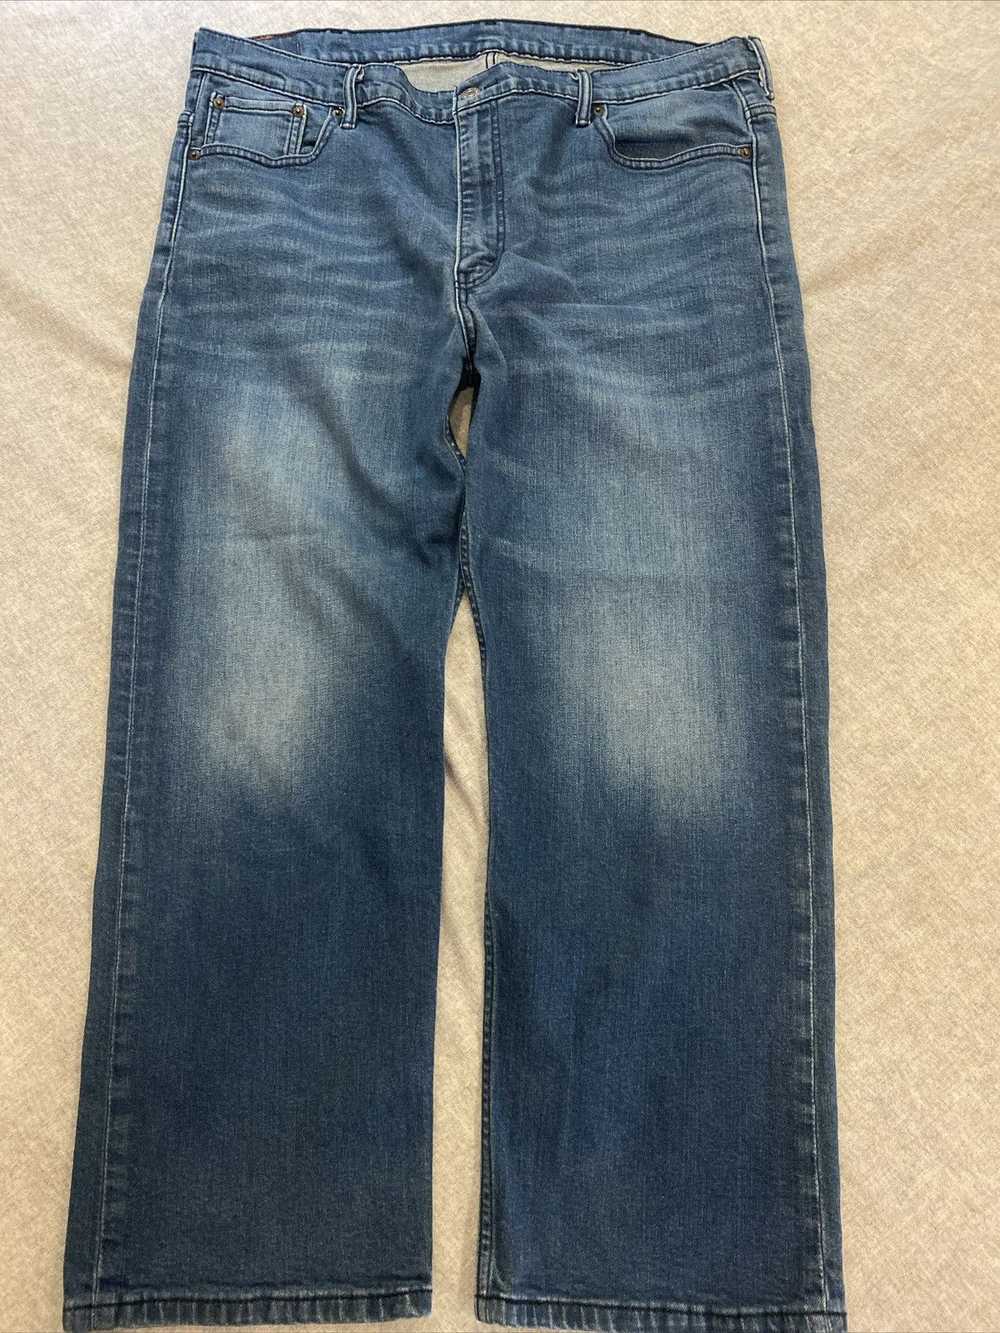 Levi's Levis 569 Jeans Mens 42x30 Blue Straight R… - image 1